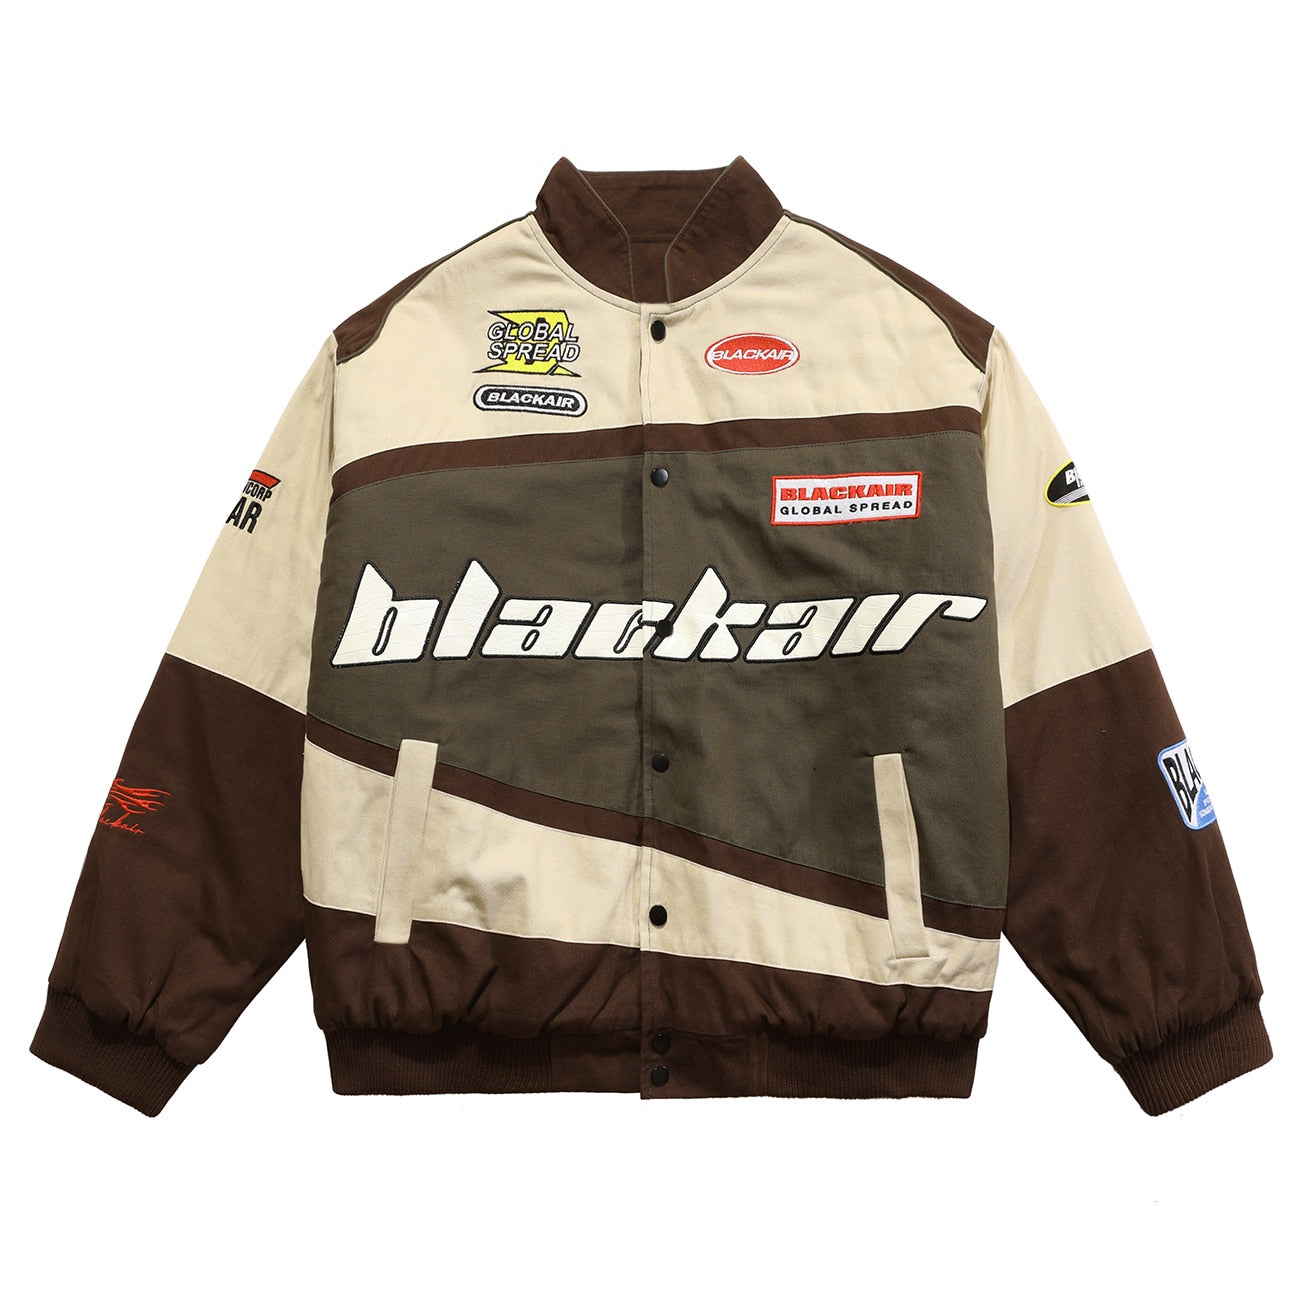 haruja - Baseball "BLACKAIR" Racing brown Jacket